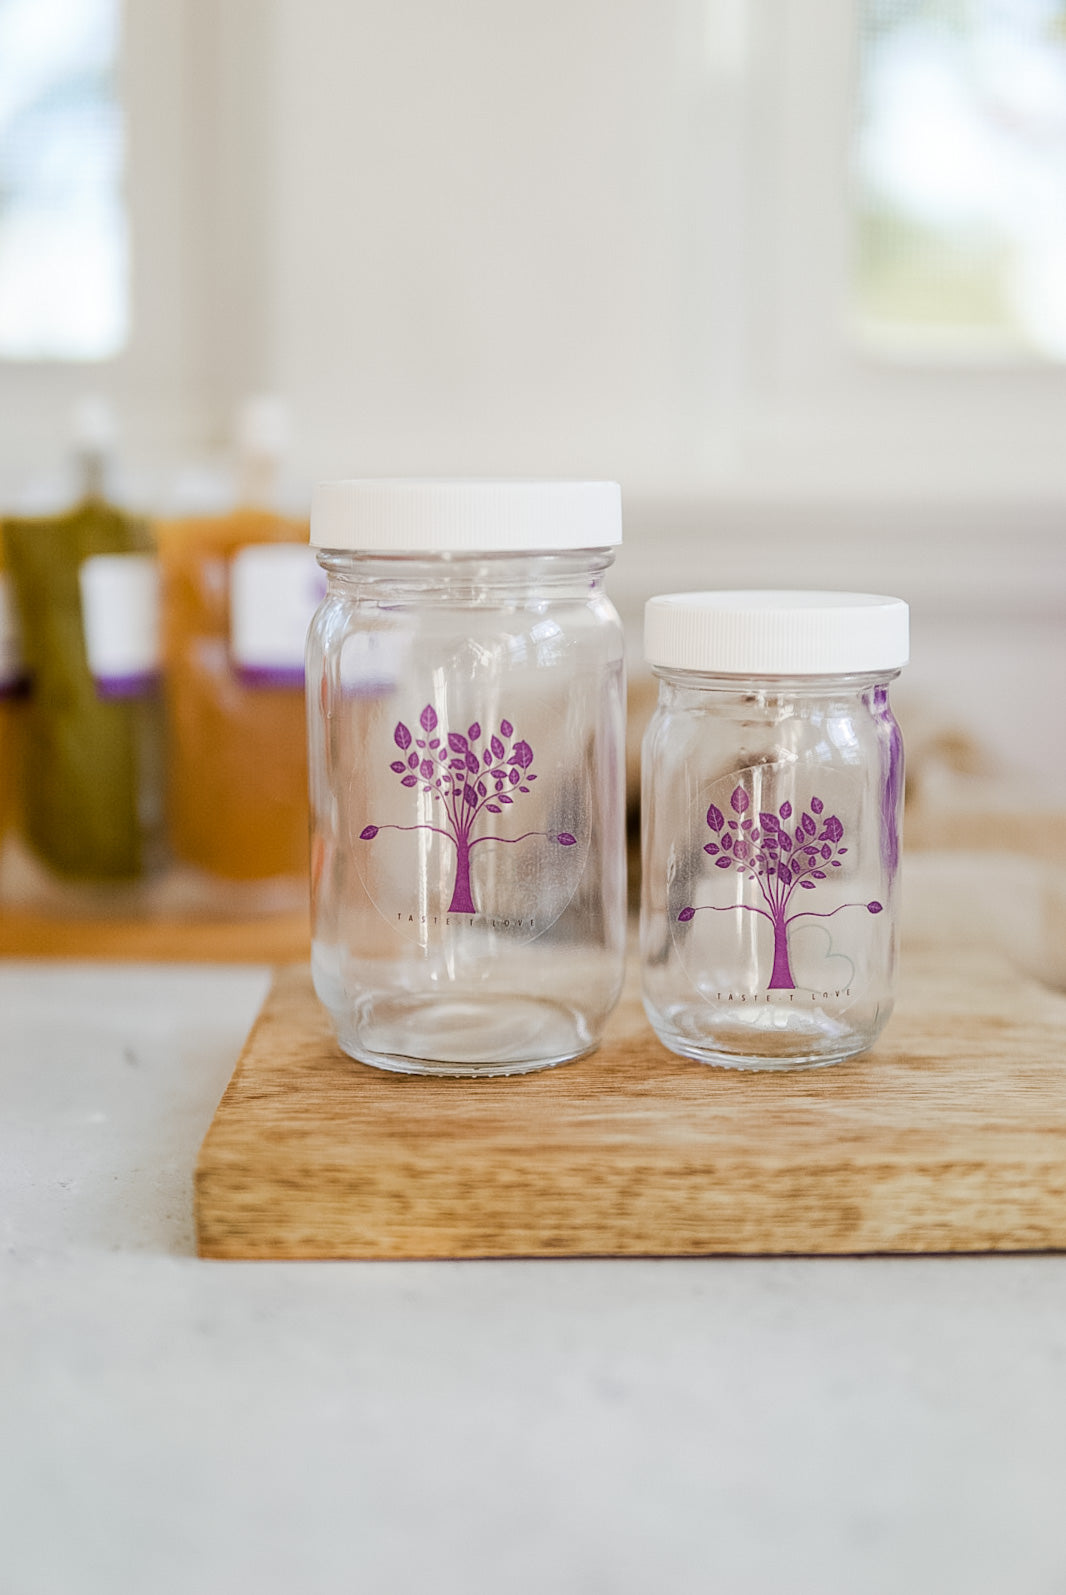 6oz Glass Baby Food Jar – Taste-T-Love Baby Food